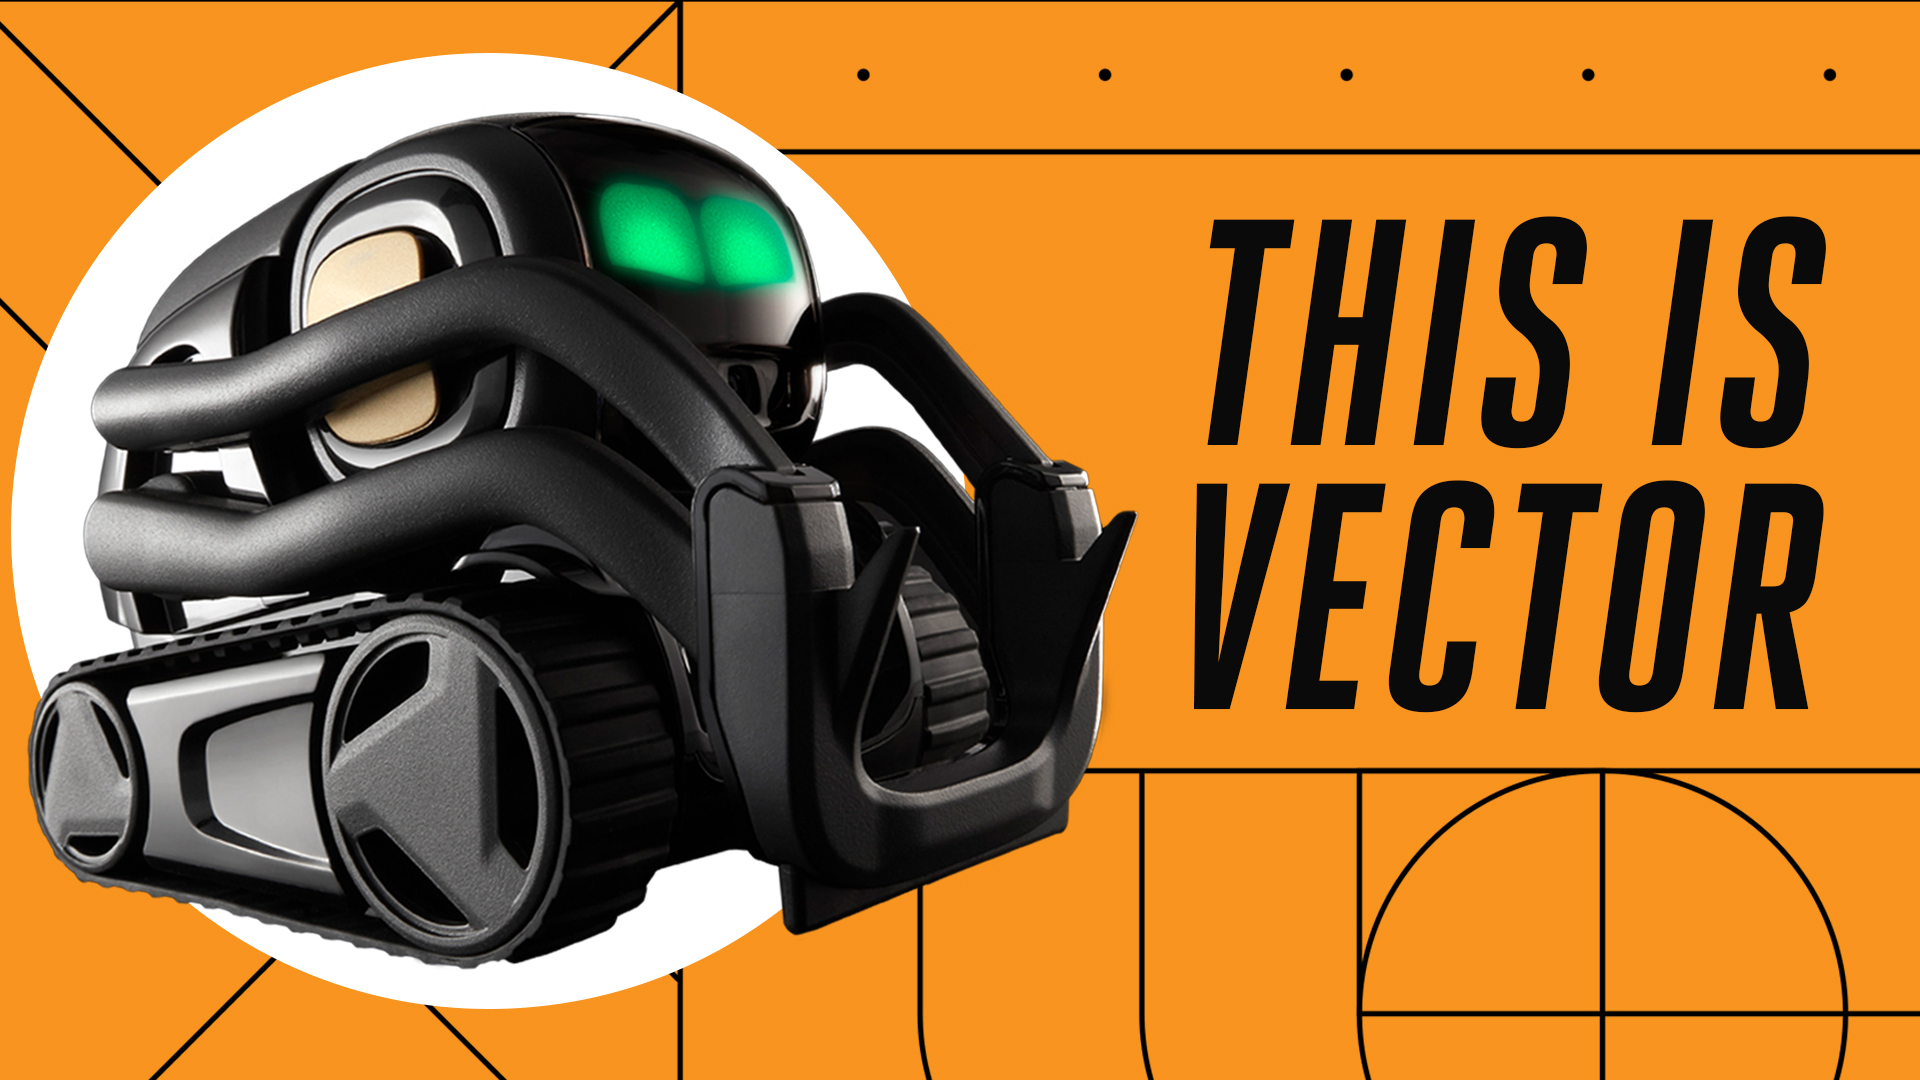 Vector Robot Vector, Vector Cozmo Robot, Vector Robot Anki